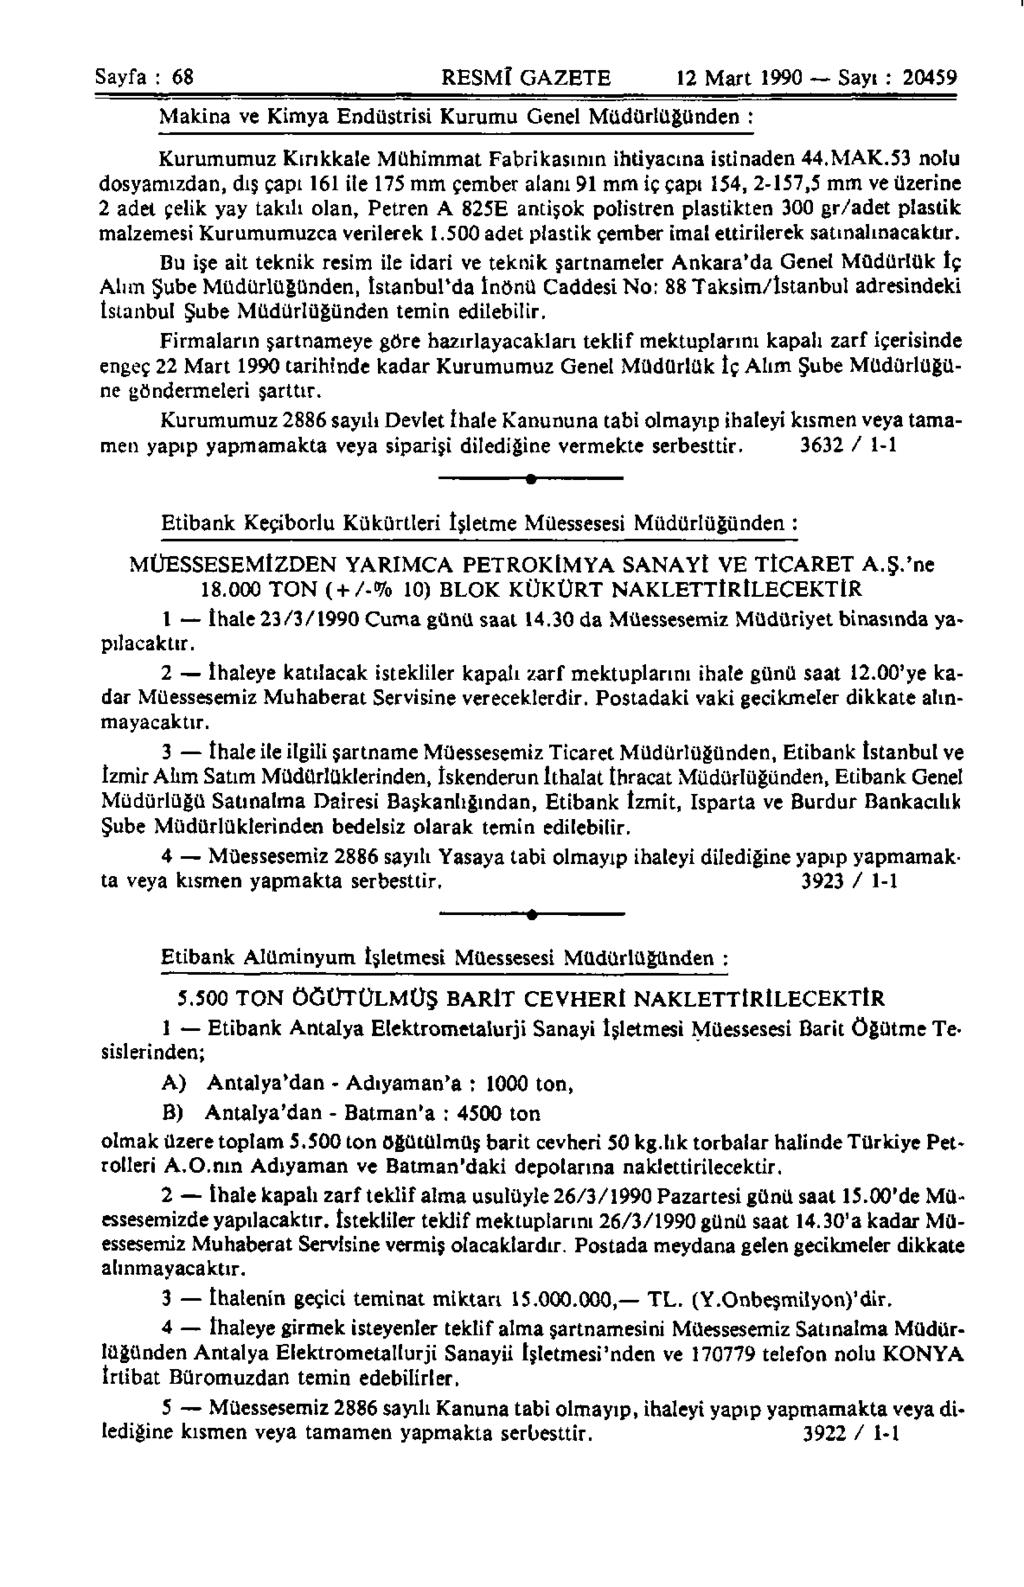 Sayfa : 68 RESMÎ GAZETE 12 Mart 1990 Sayı : 20459 Makina ve Kimya Endüstrisi Kurumu Genel Müdürlüğünden : Kurumumuz Kırıkkale Mühimmat Fabrikasının ihtiyacına istinaden 44.MAK.